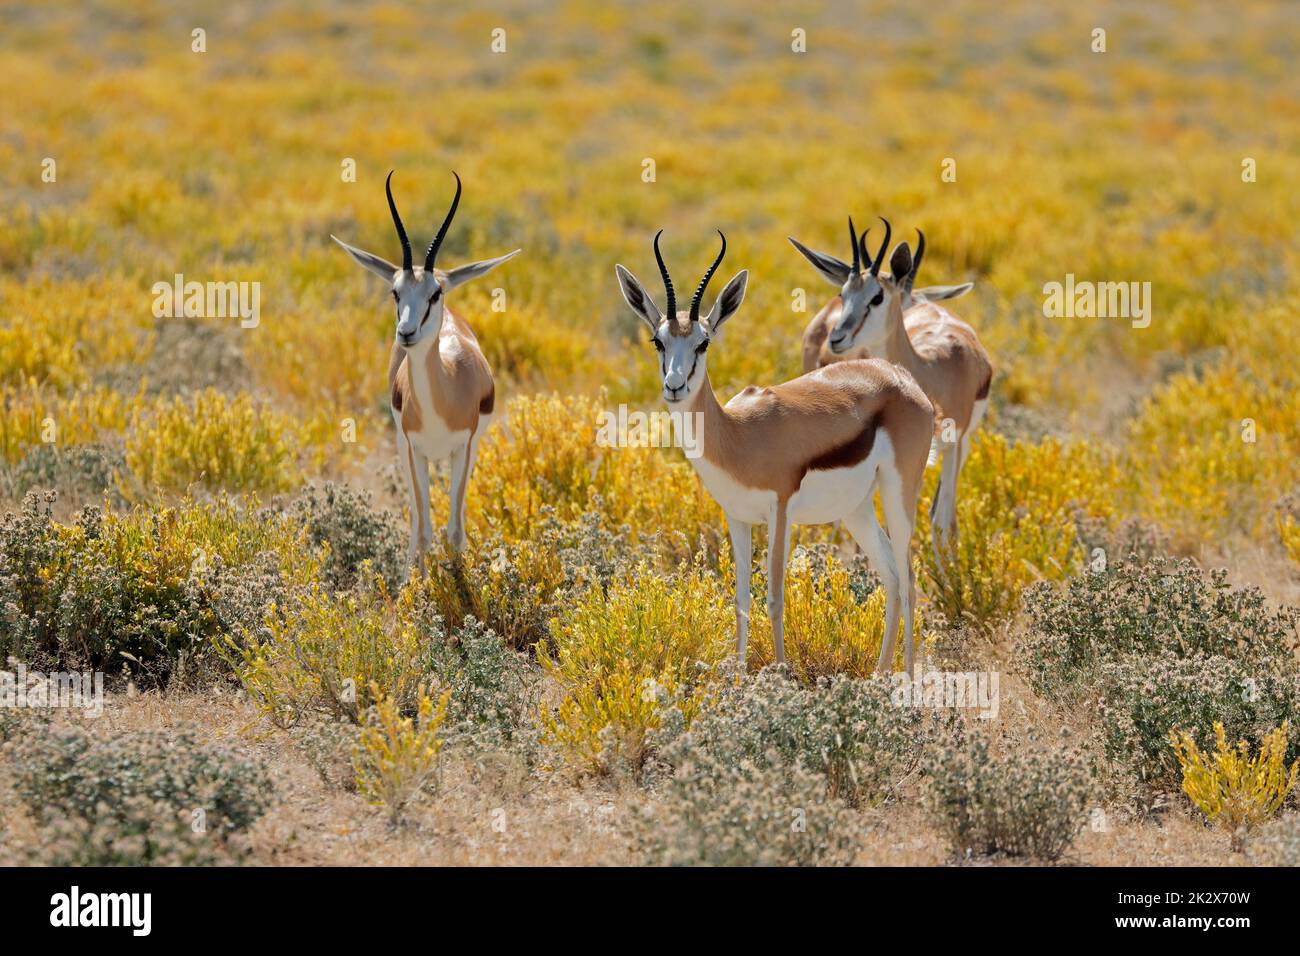 Springböcke, Antilopen im natürlichen Lebensraum Stockfoto